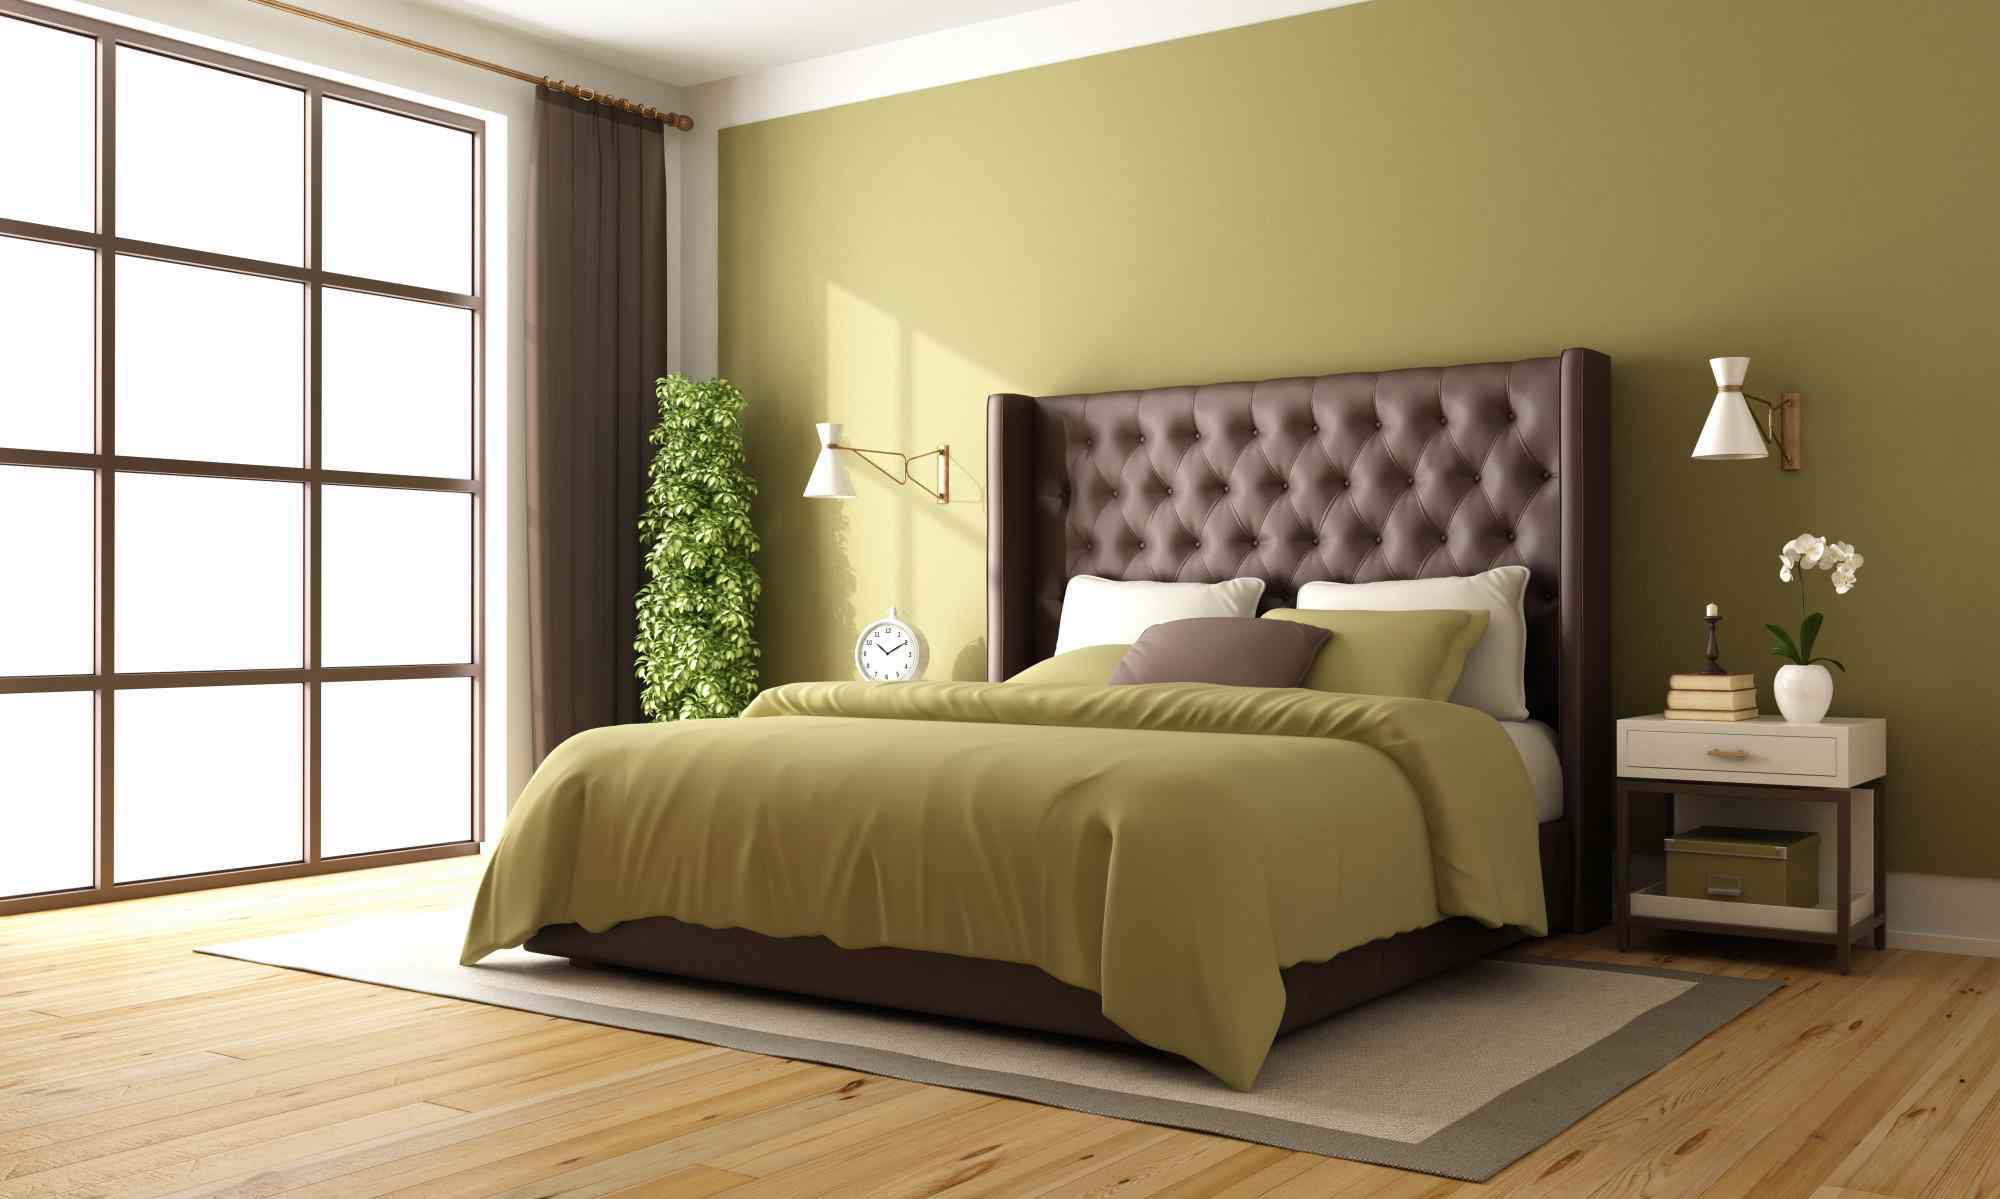 classic-brown-green-bedroom_11zon